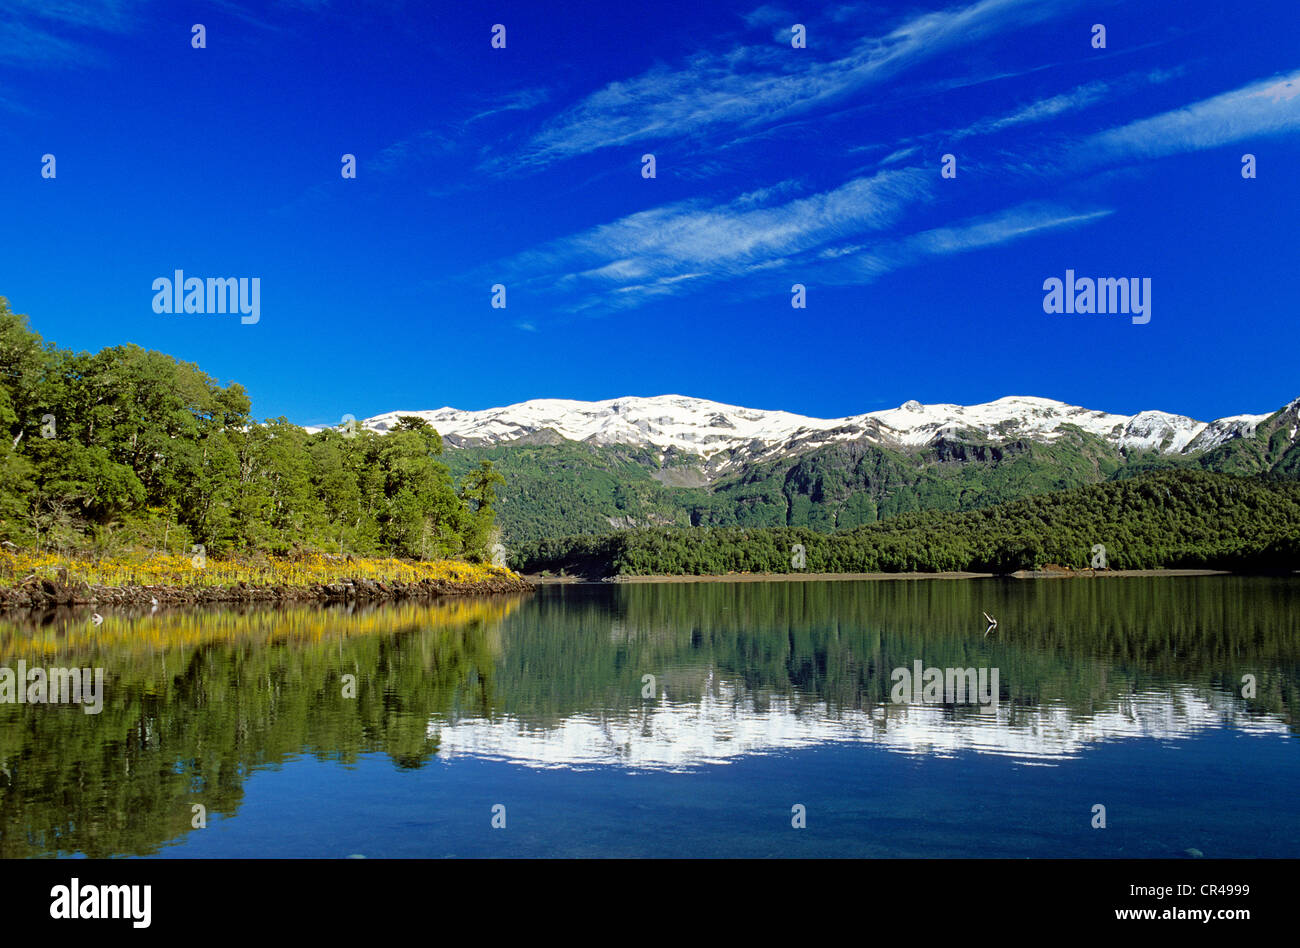 Chile, Los Lagos region, Araucania Province, Conguillio National Park, Conguillio lake Stock Photo